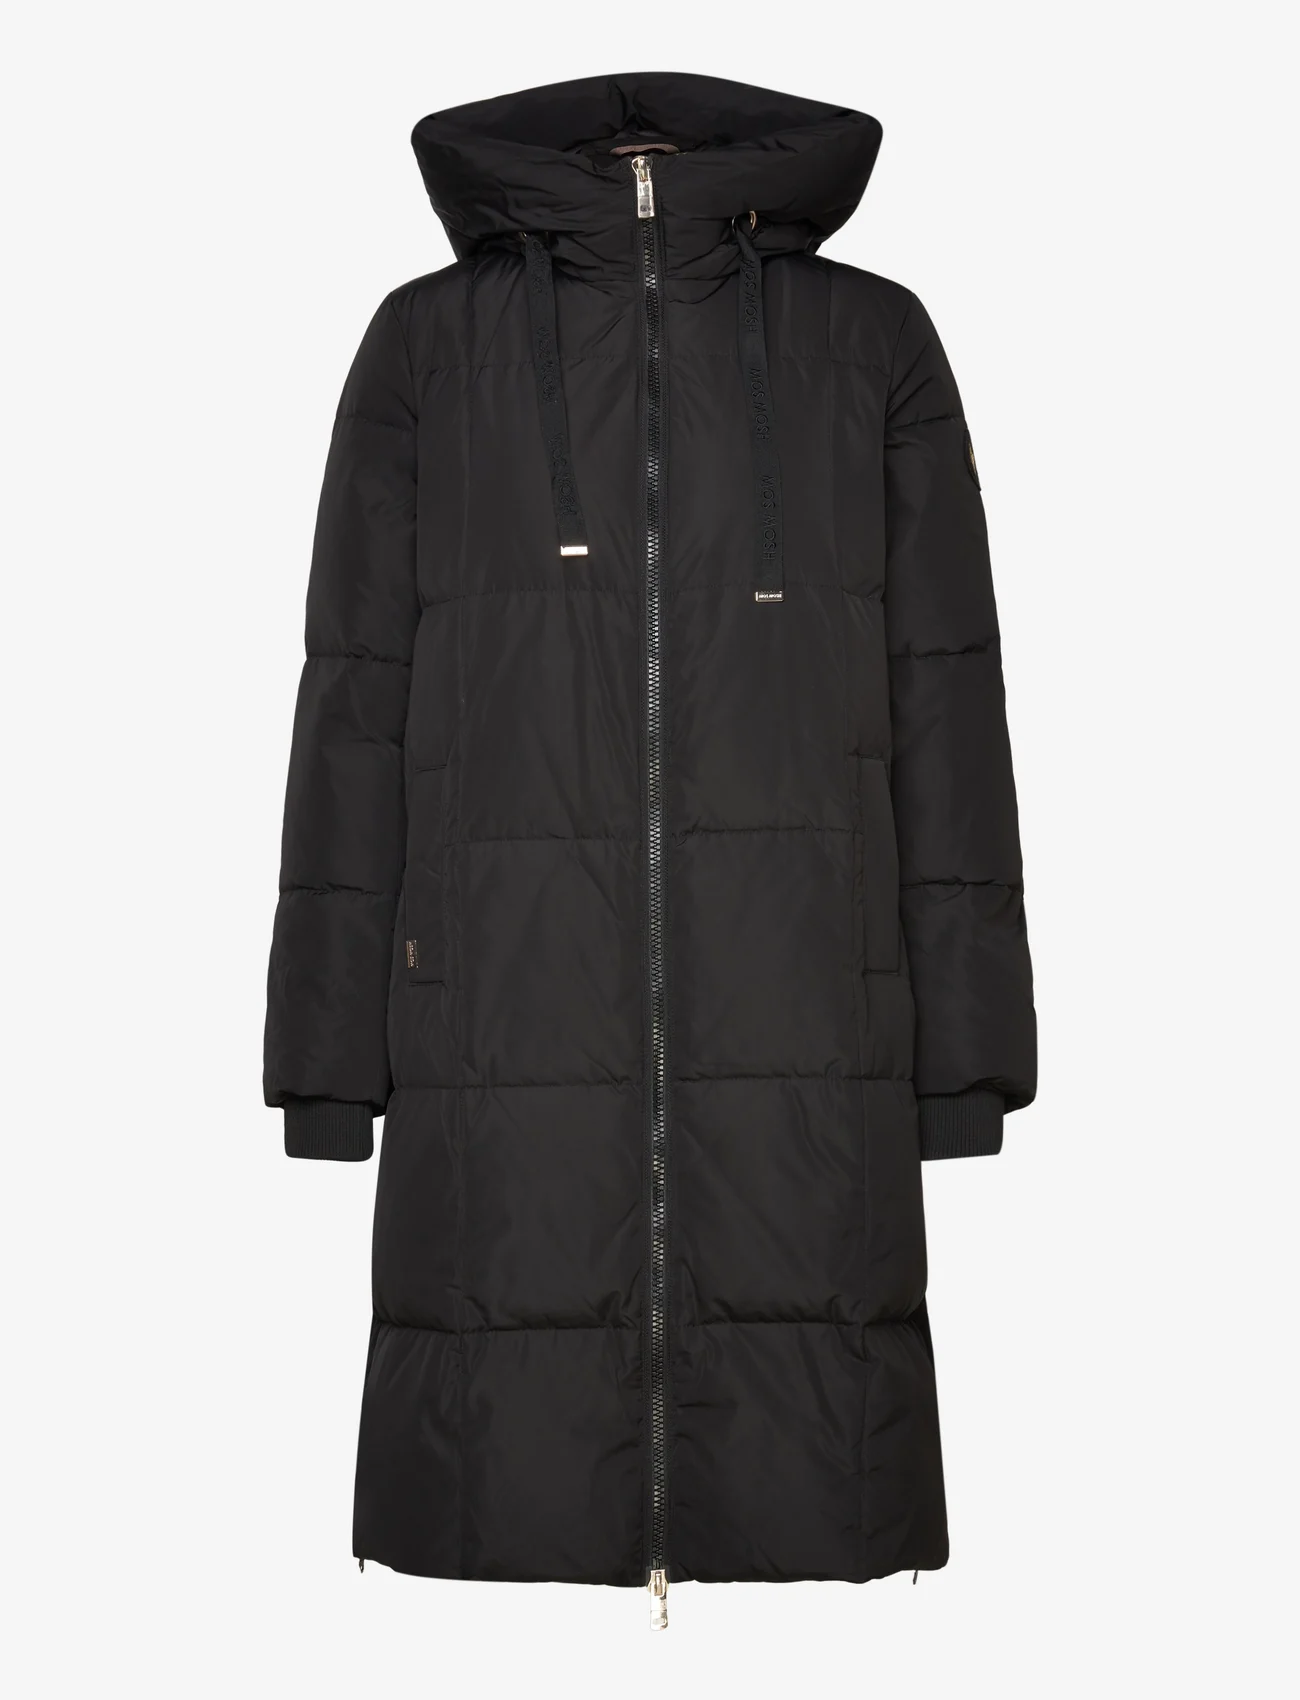 MOS MOSH - Nova Square Down Coat - winter jackets - black - 0